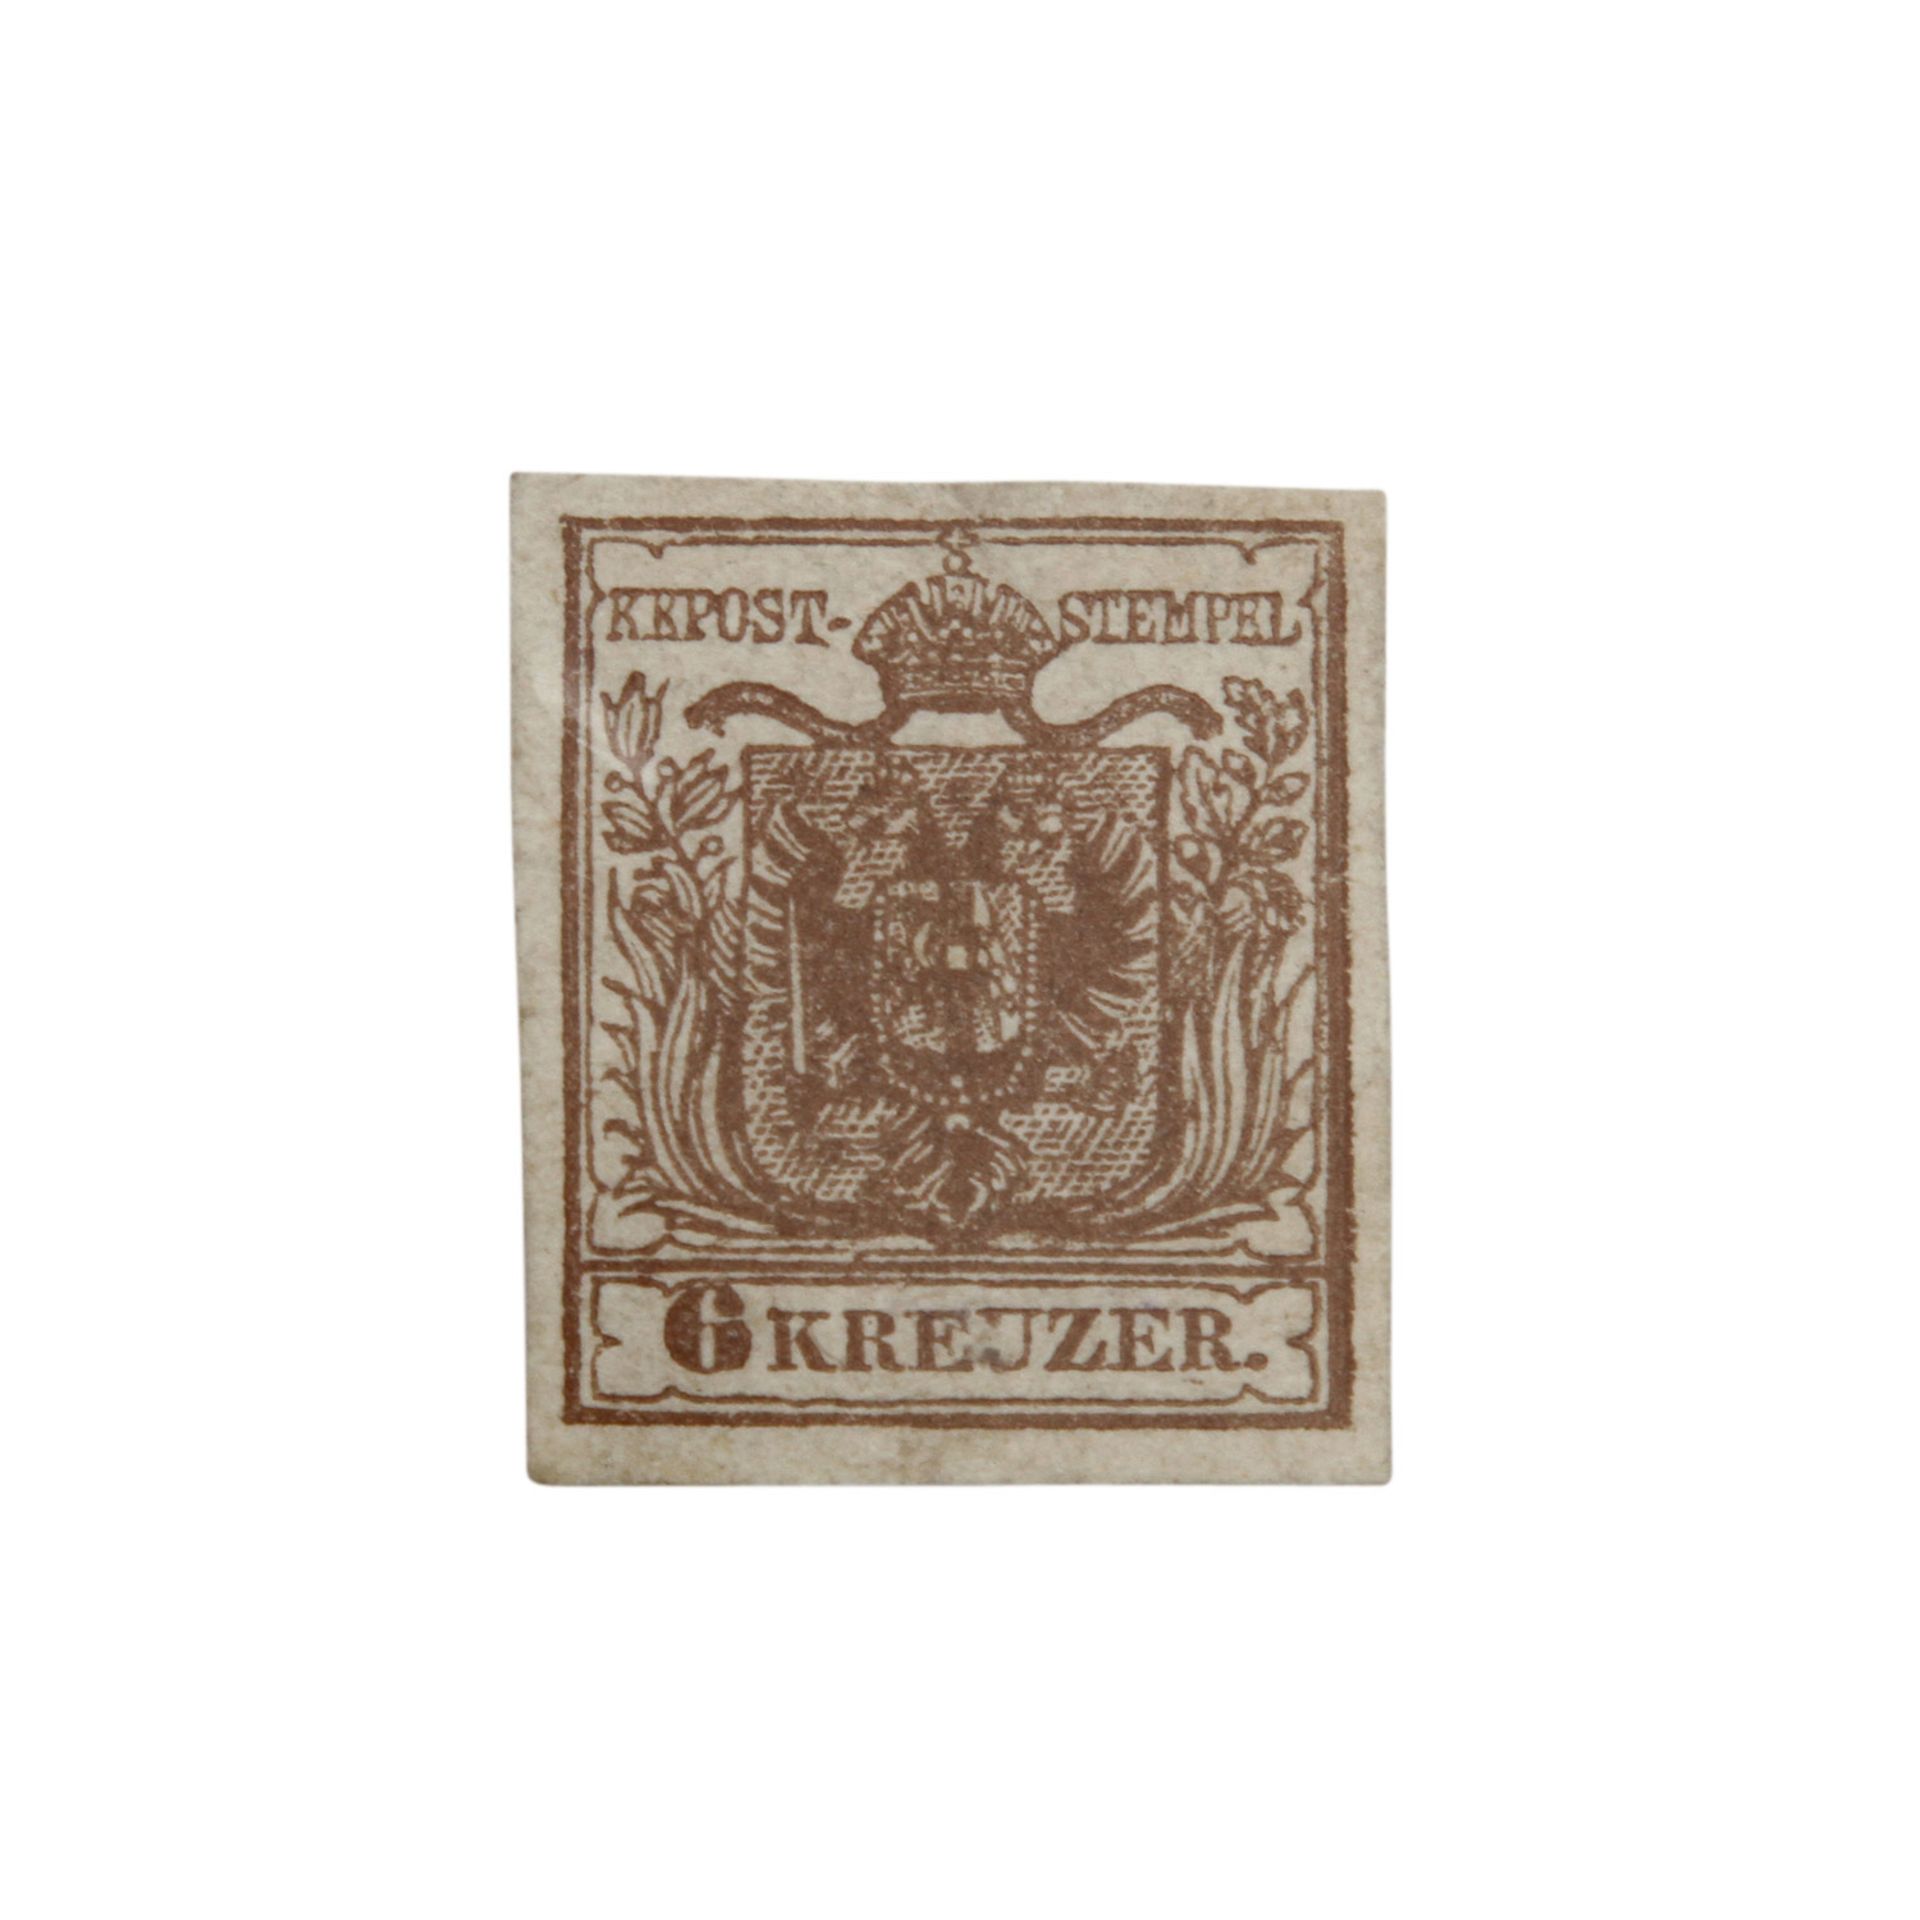 Österreich 1850 - Freimarke Mi.Nr. 4ya,Ferch Typ III. graubraun. Ungebraucht, nachgummiert, dünne - Bild 2 aus 3